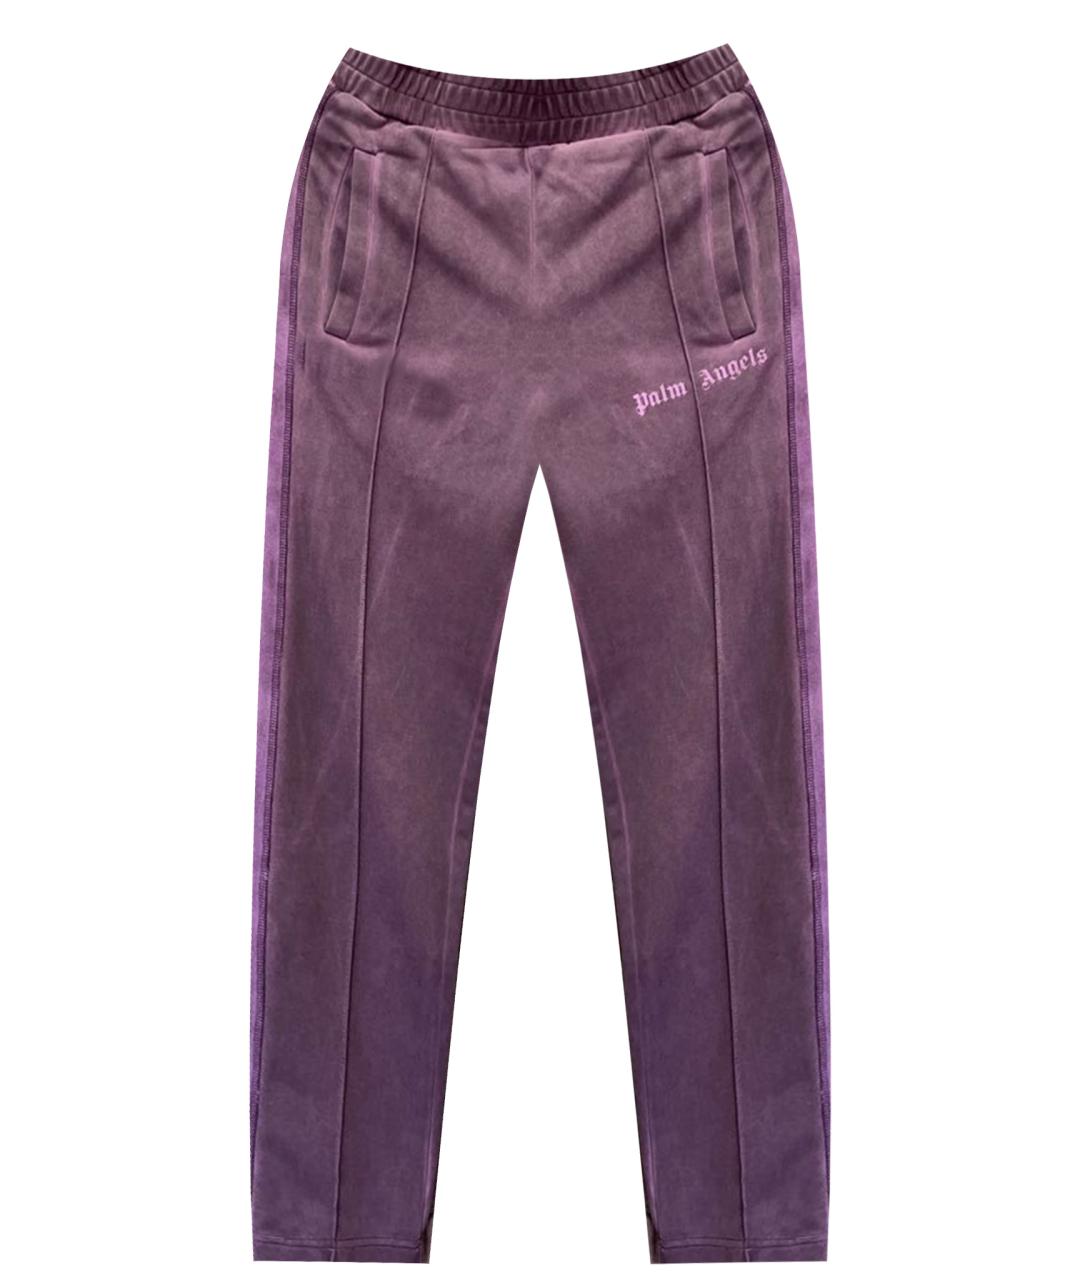 PALM ANGELS Фиолетовые синтетические спортивные брюки и шорты, фото 1